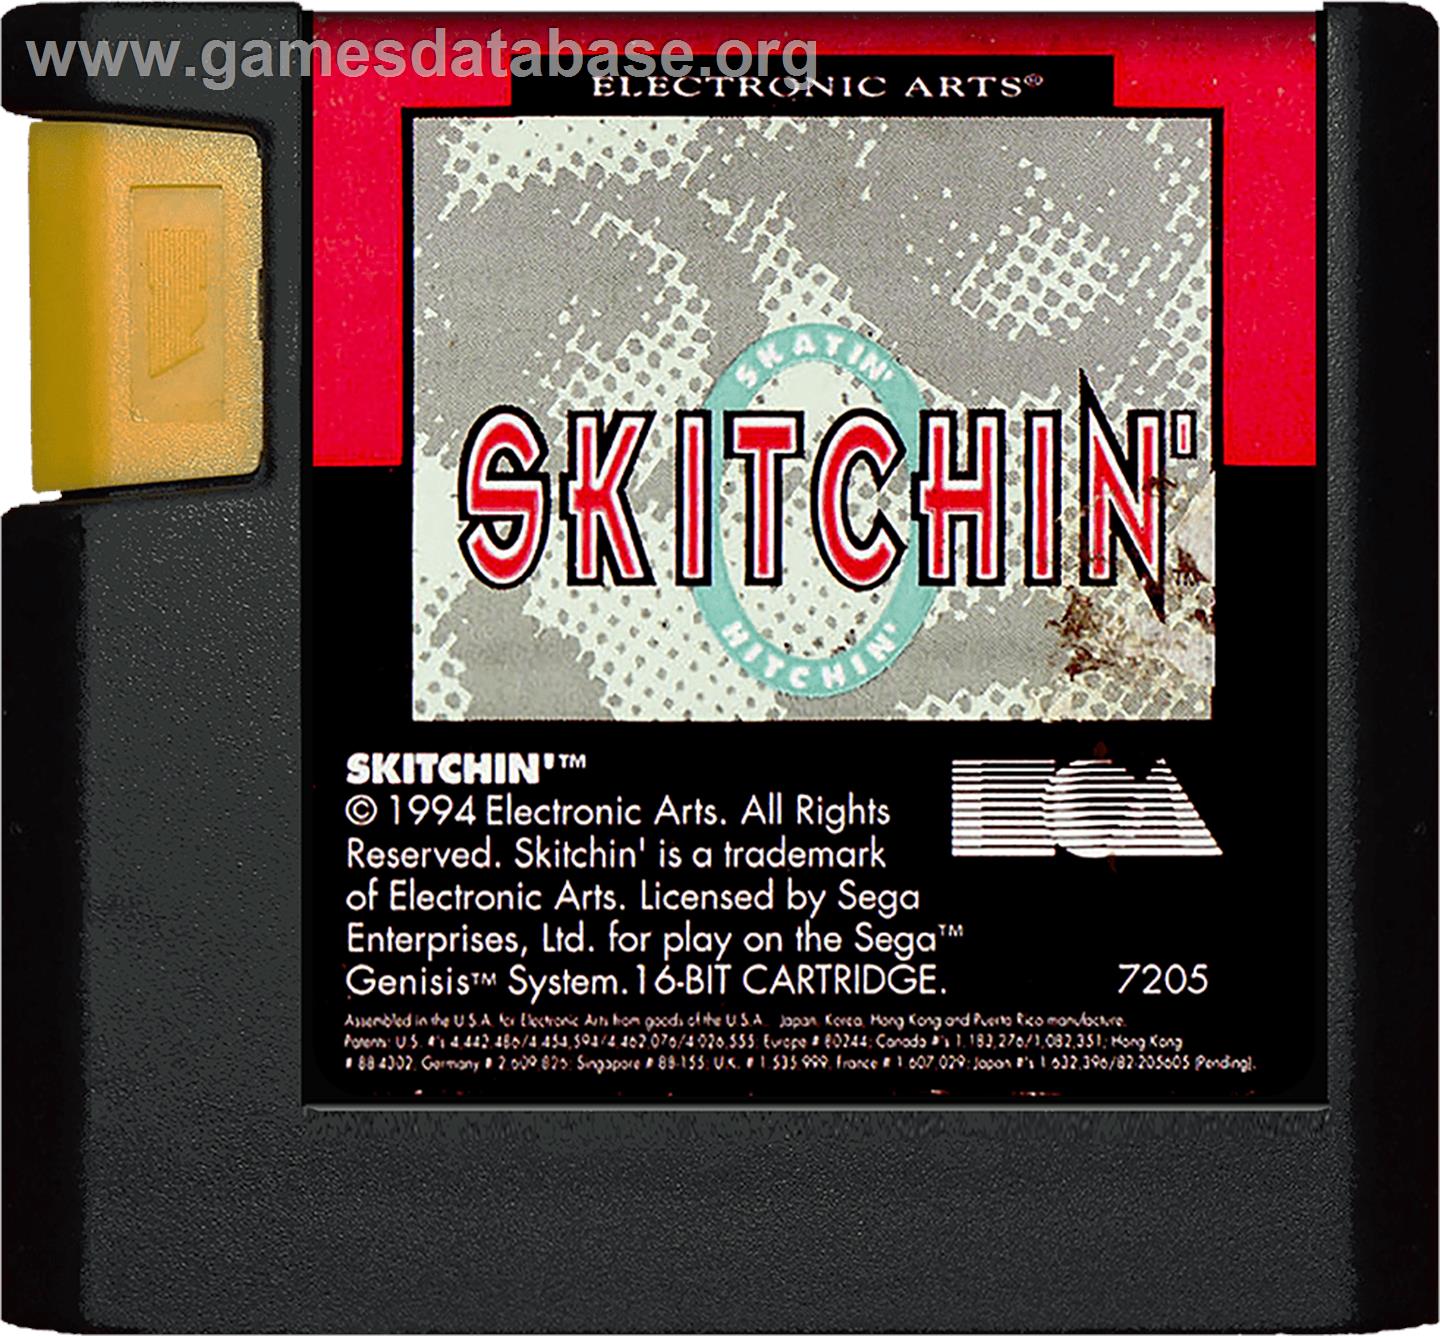 Skitchin' - Sega Genesis - Artwork - Cartridge